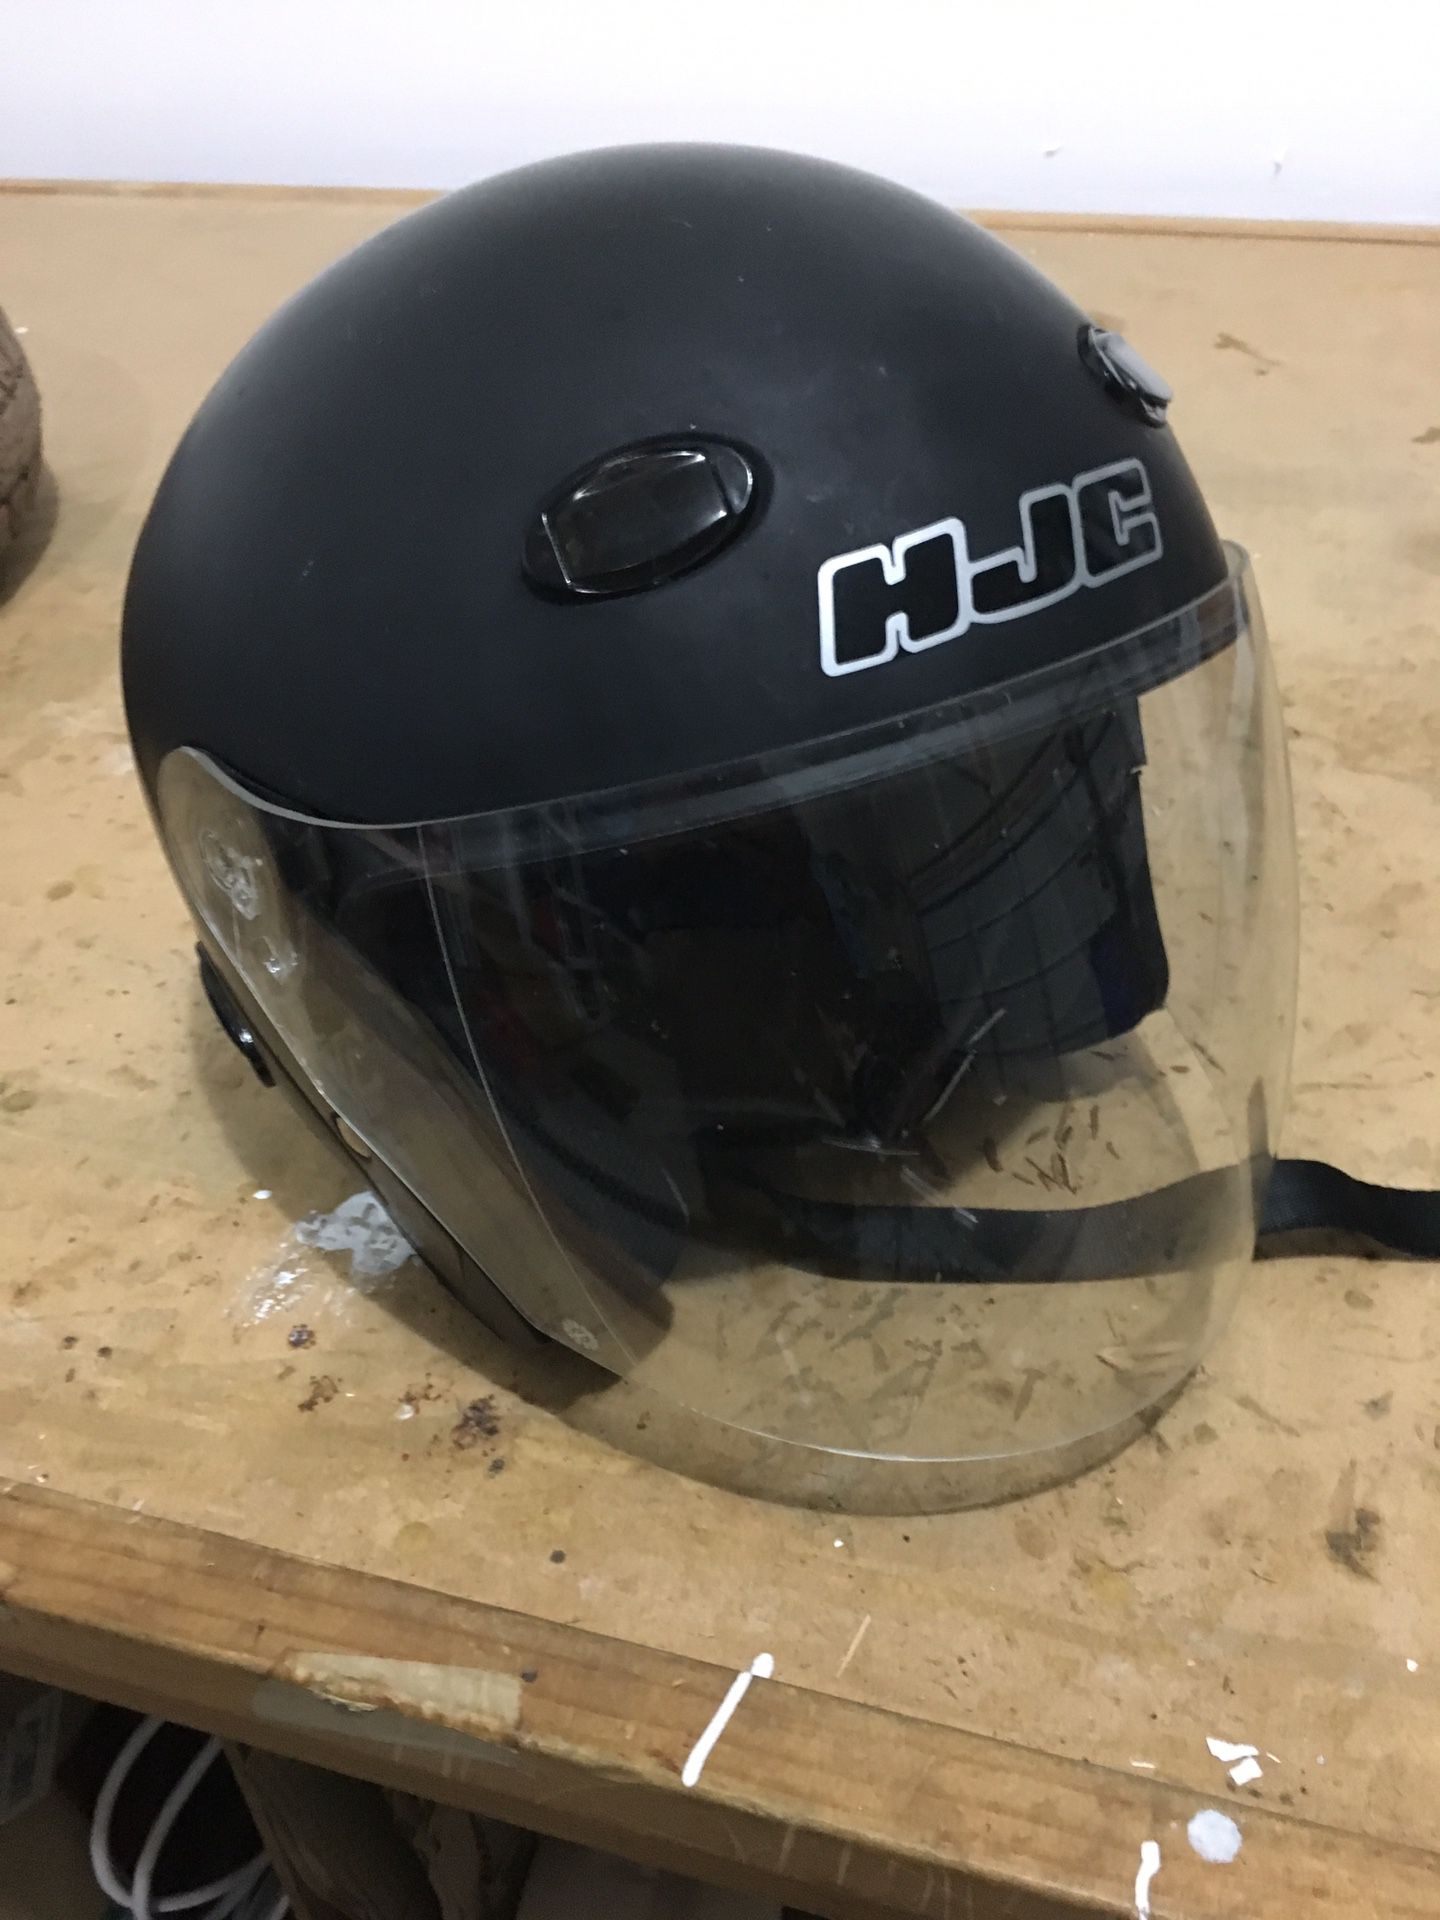 hjc motorcycle helmet large